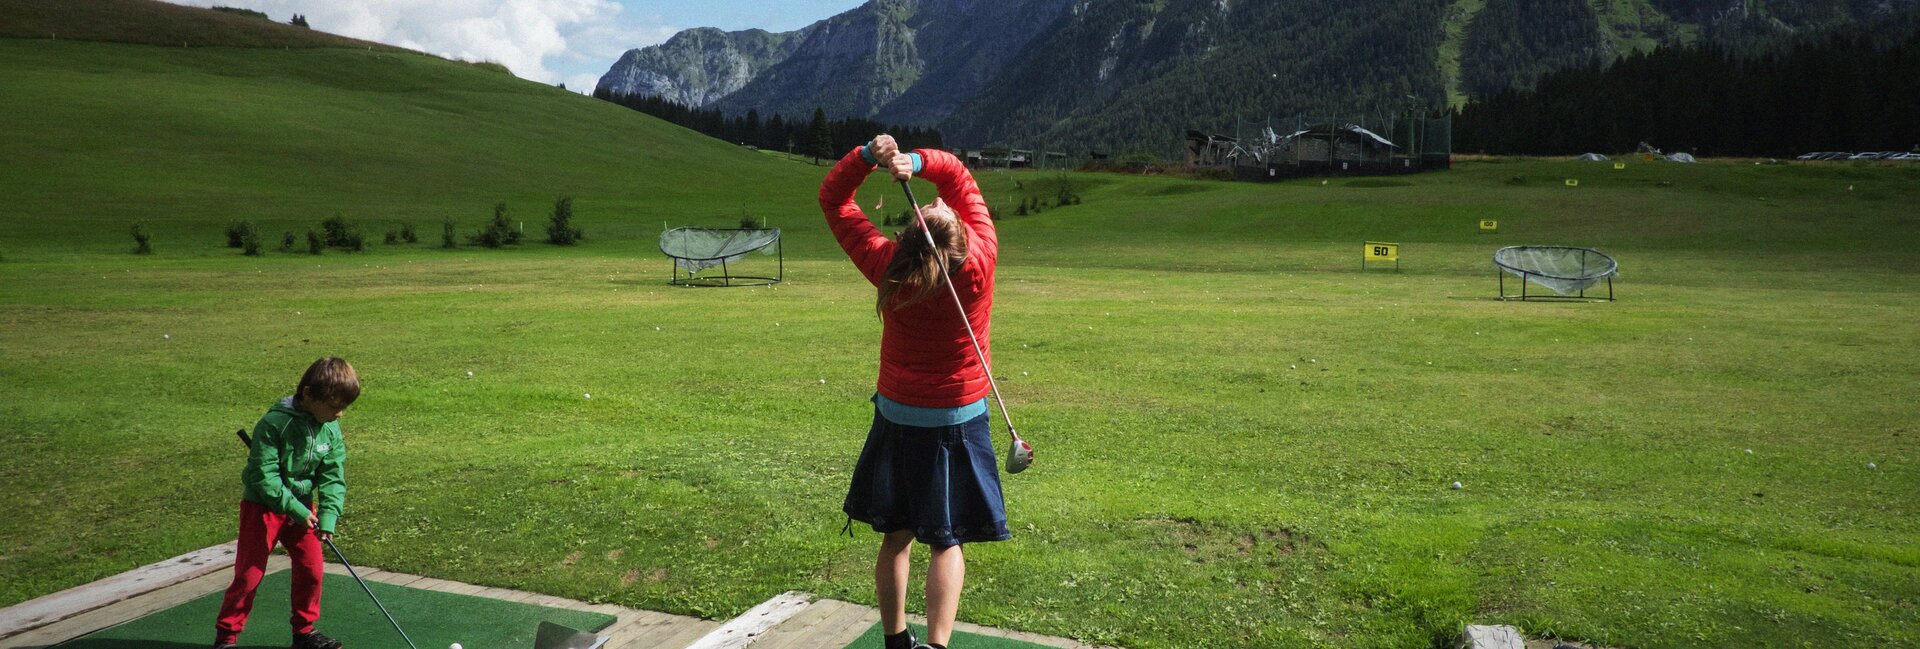 Madonna di Campiglio - Val Rendena - Children play golf